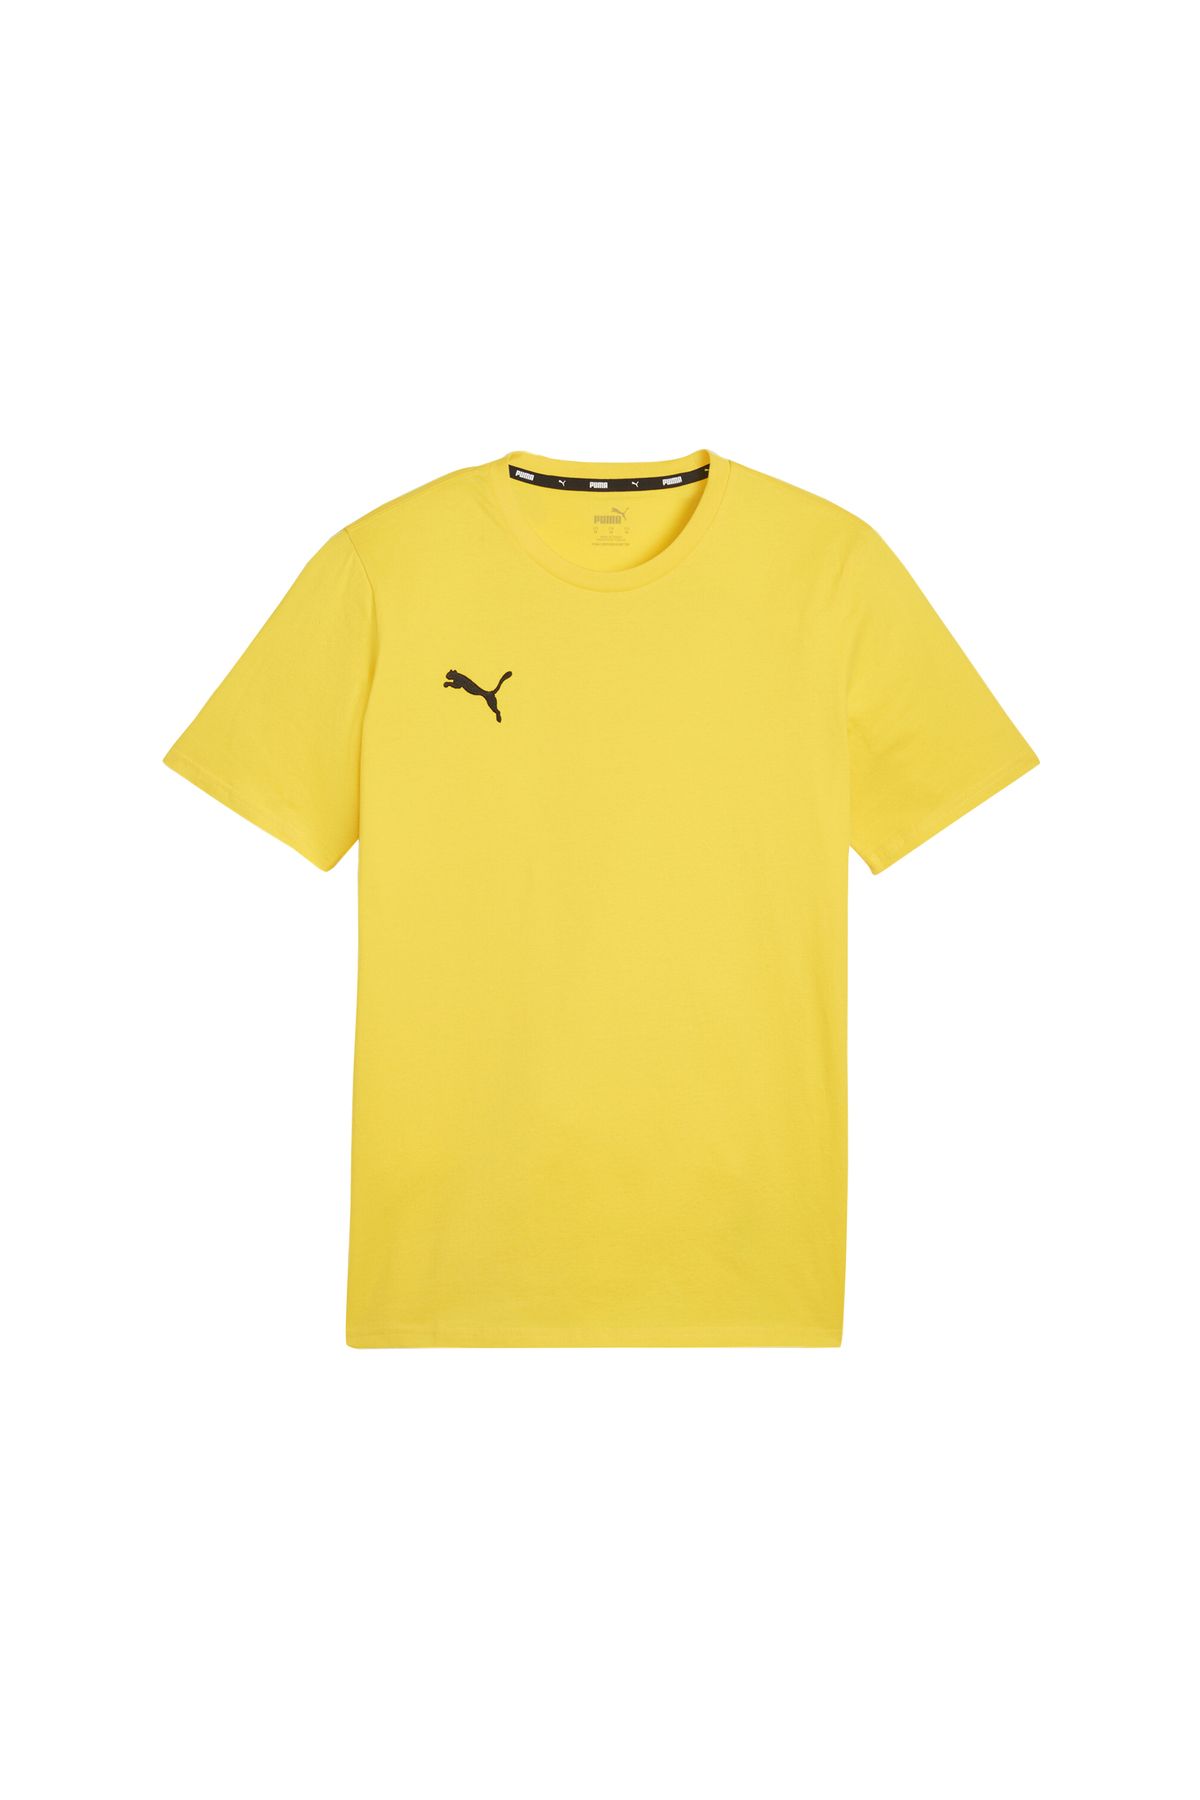 Puma Erkek Günlük Kullanıma ve Spora Uygun Antrenman T-shirt Rahat Düz Spor Tişört